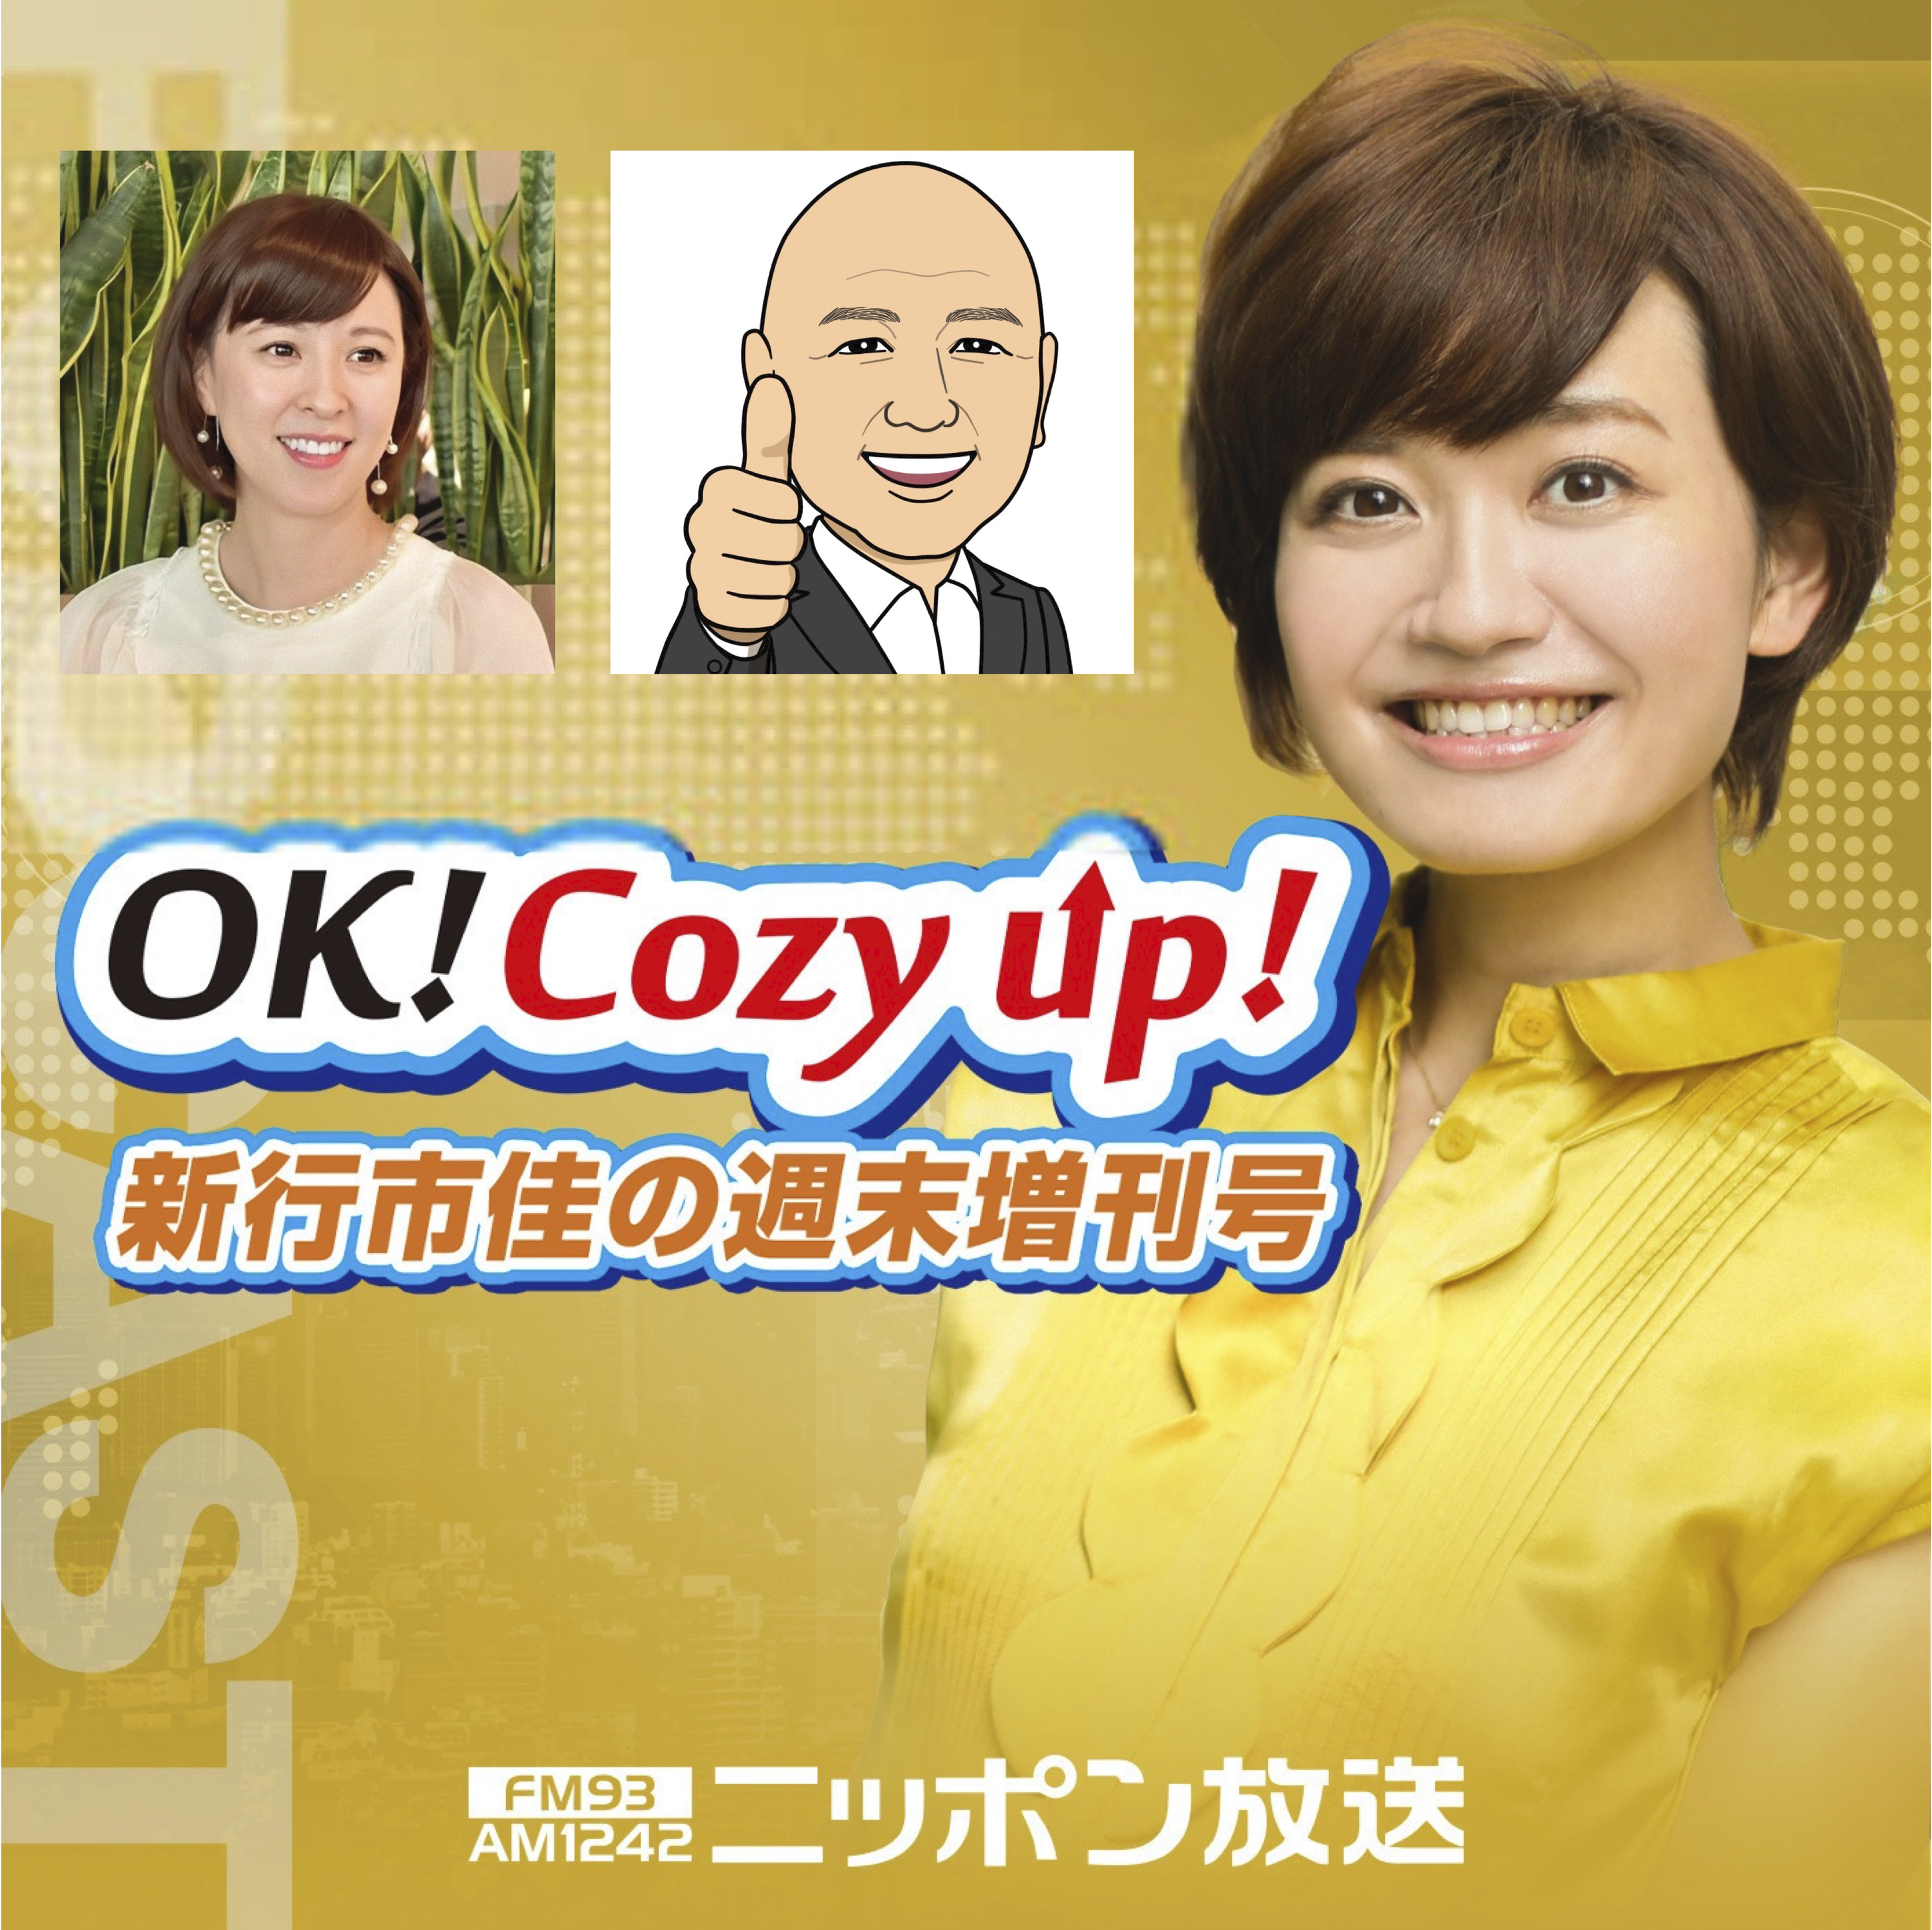 2021年12月25日（土）「OK! Cozy up!週末増刊号」修正版